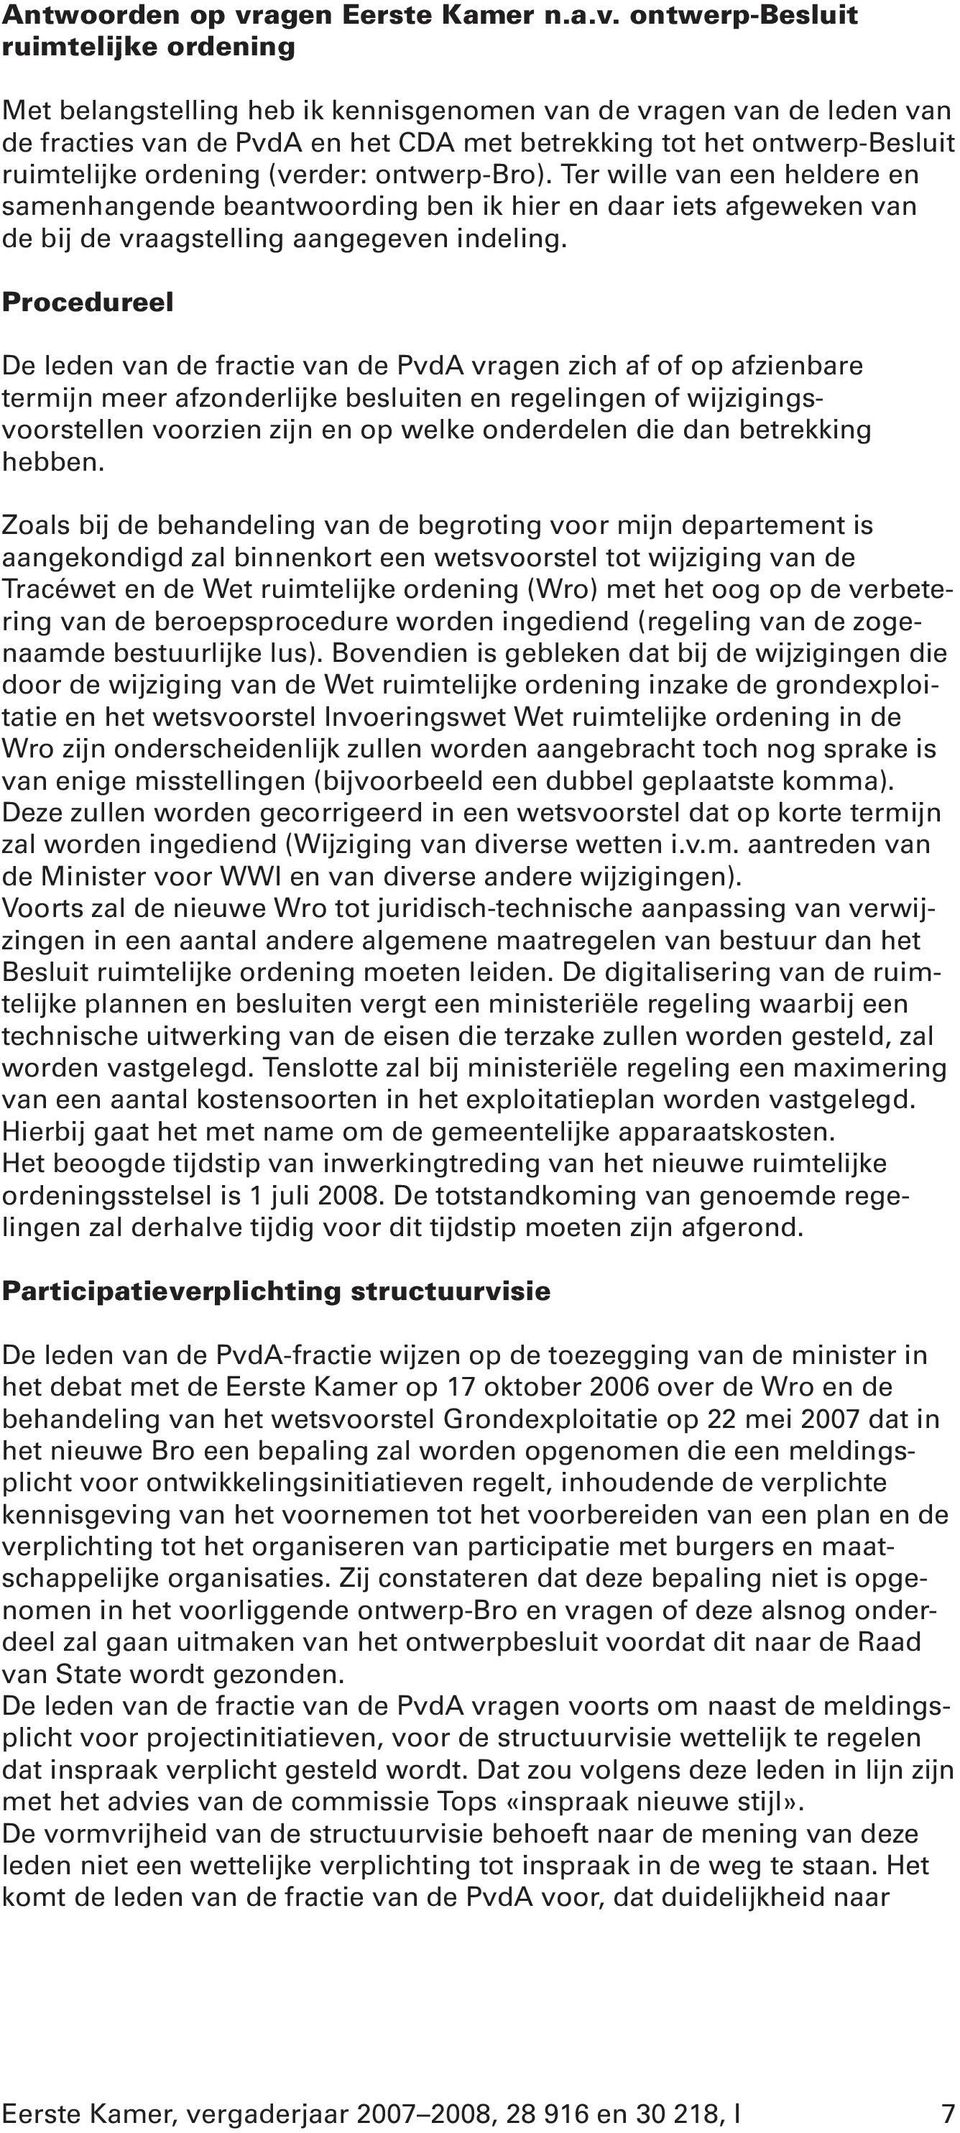 ontwerp-besluit ruimtelijke ordening Met belangstelling heb ik kennisgenomen van de vragen van de leden van de fracties van de PvdA en het CDA met betrekking tot het ontwerp-besluit ruimtelijke